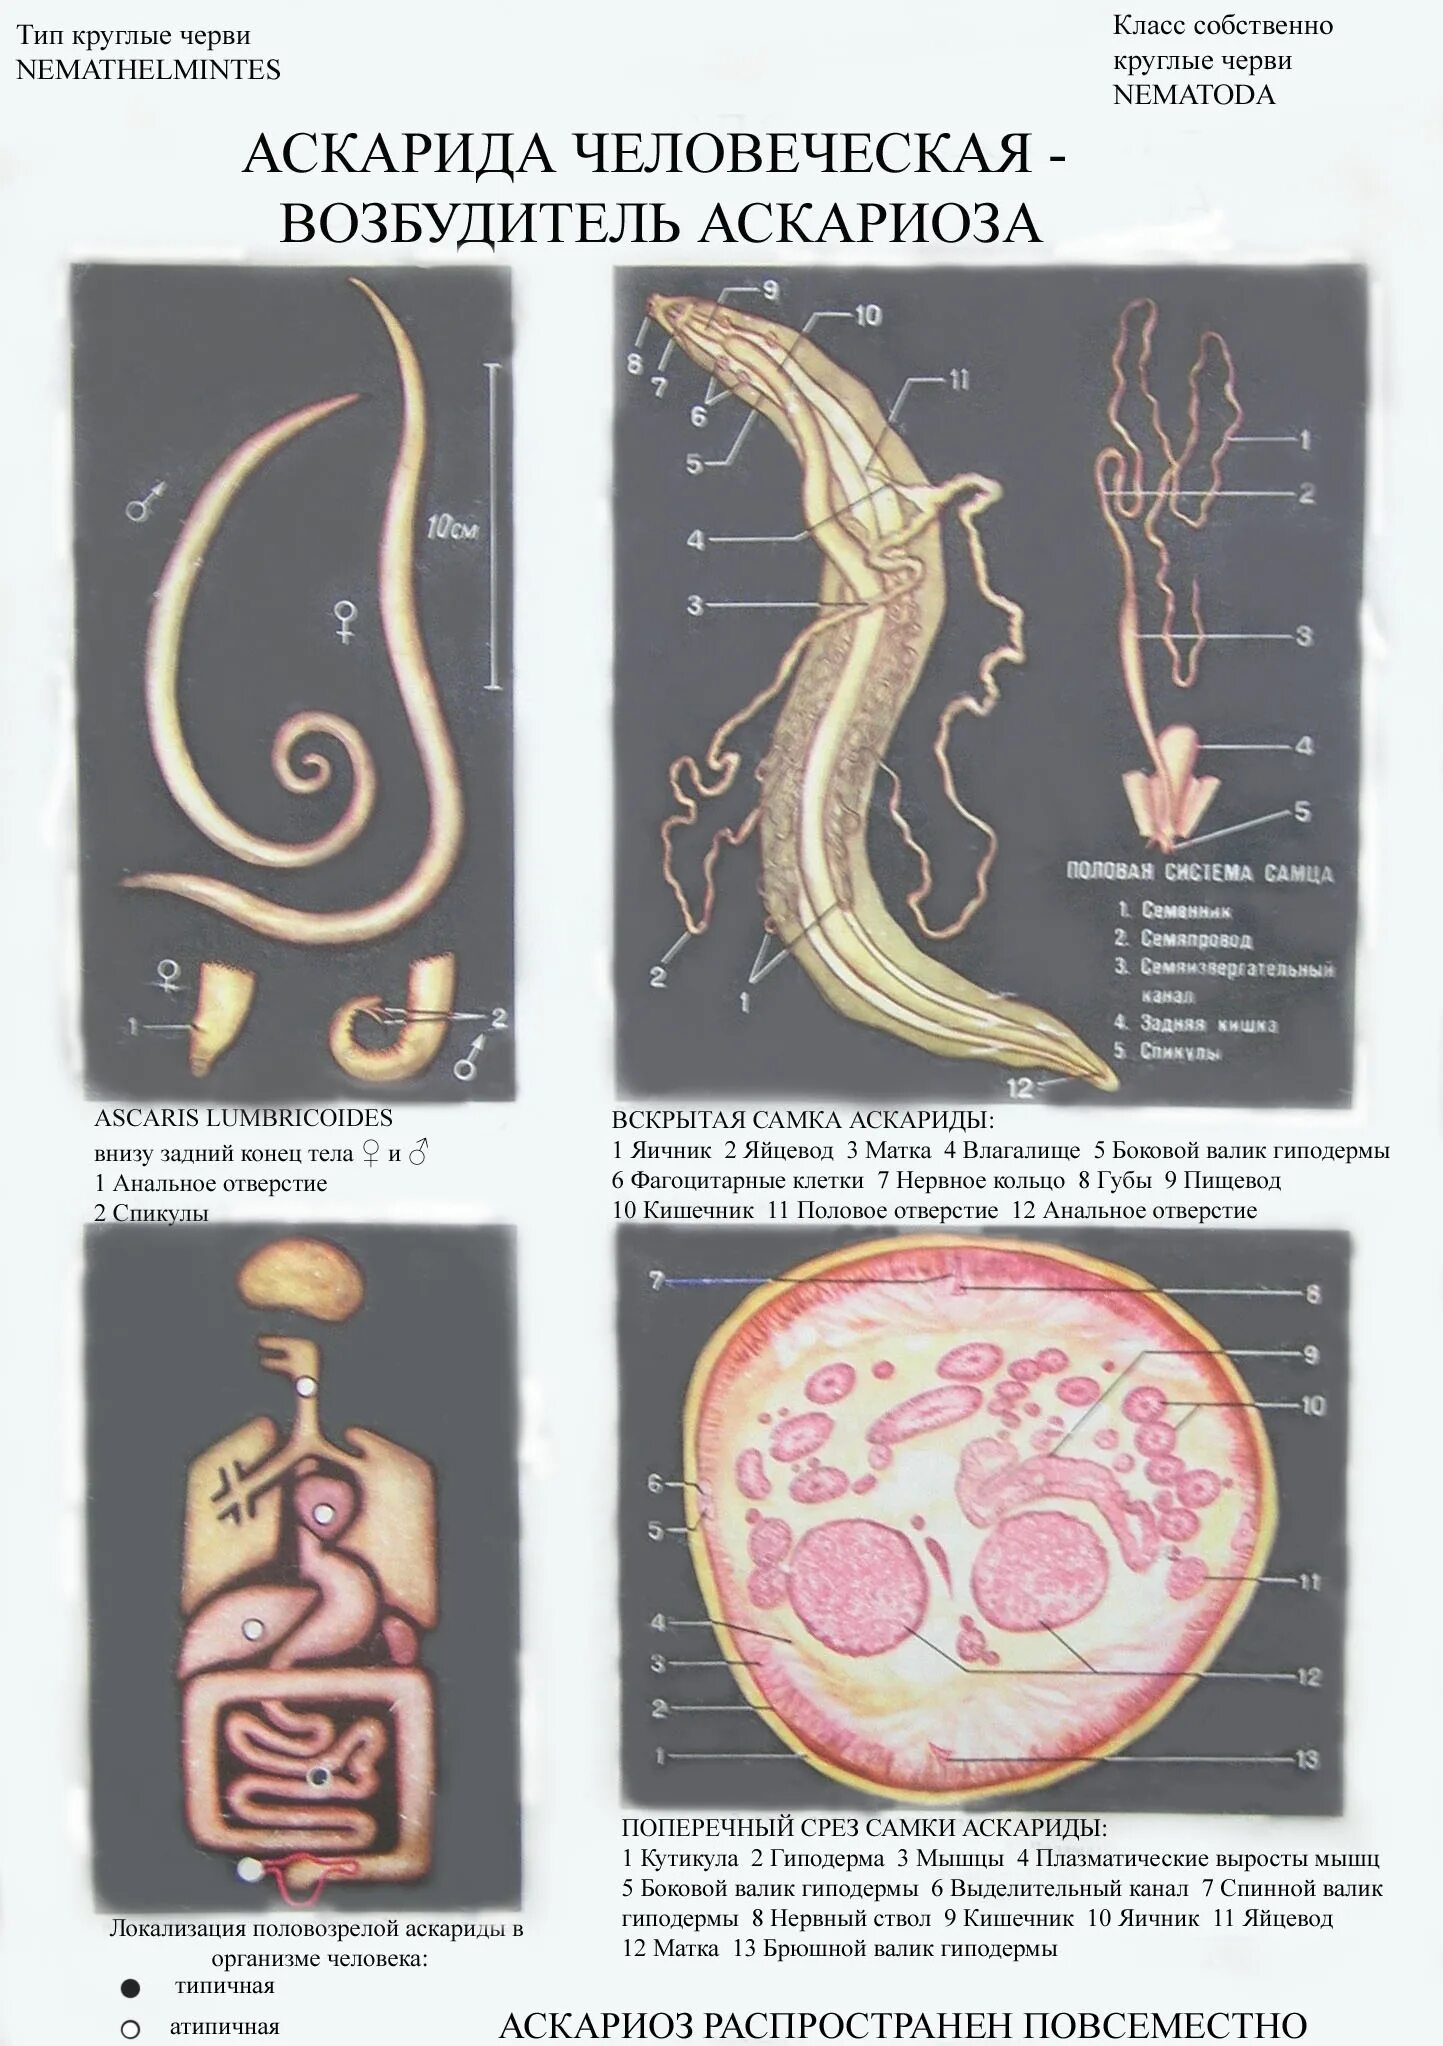 В каком органе обитает взрослая особь аскариды. Круглые черви аскарида человеческая. Тип круглые черви аскарида человеческая.